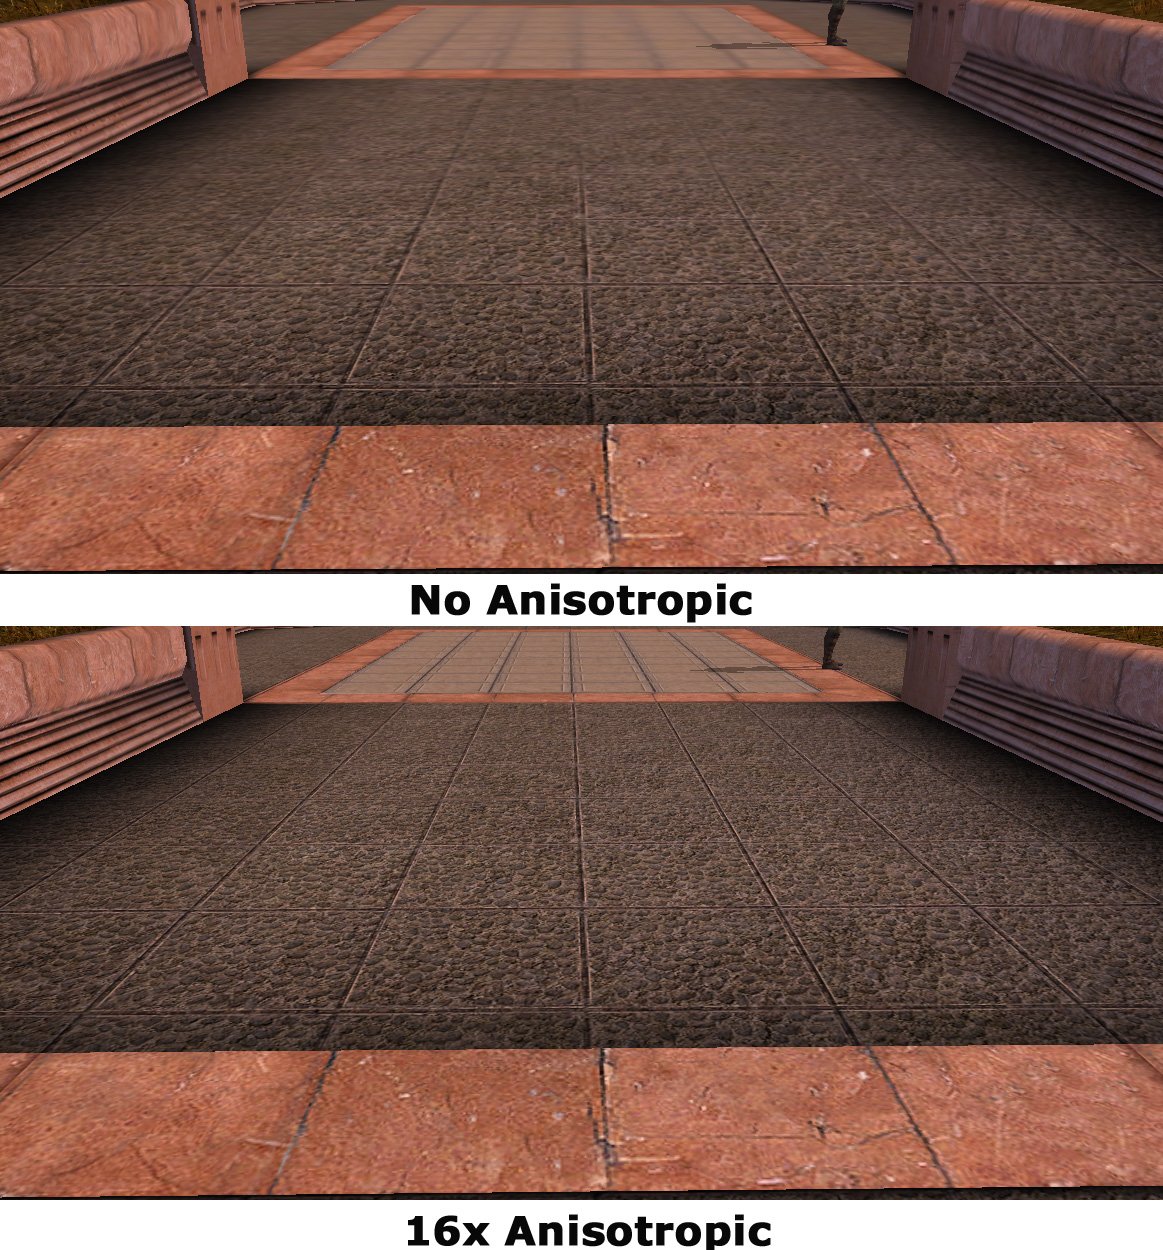 La Guia simple del filtro Antialiasing (AA) y el filtro Anisotropico (AF)